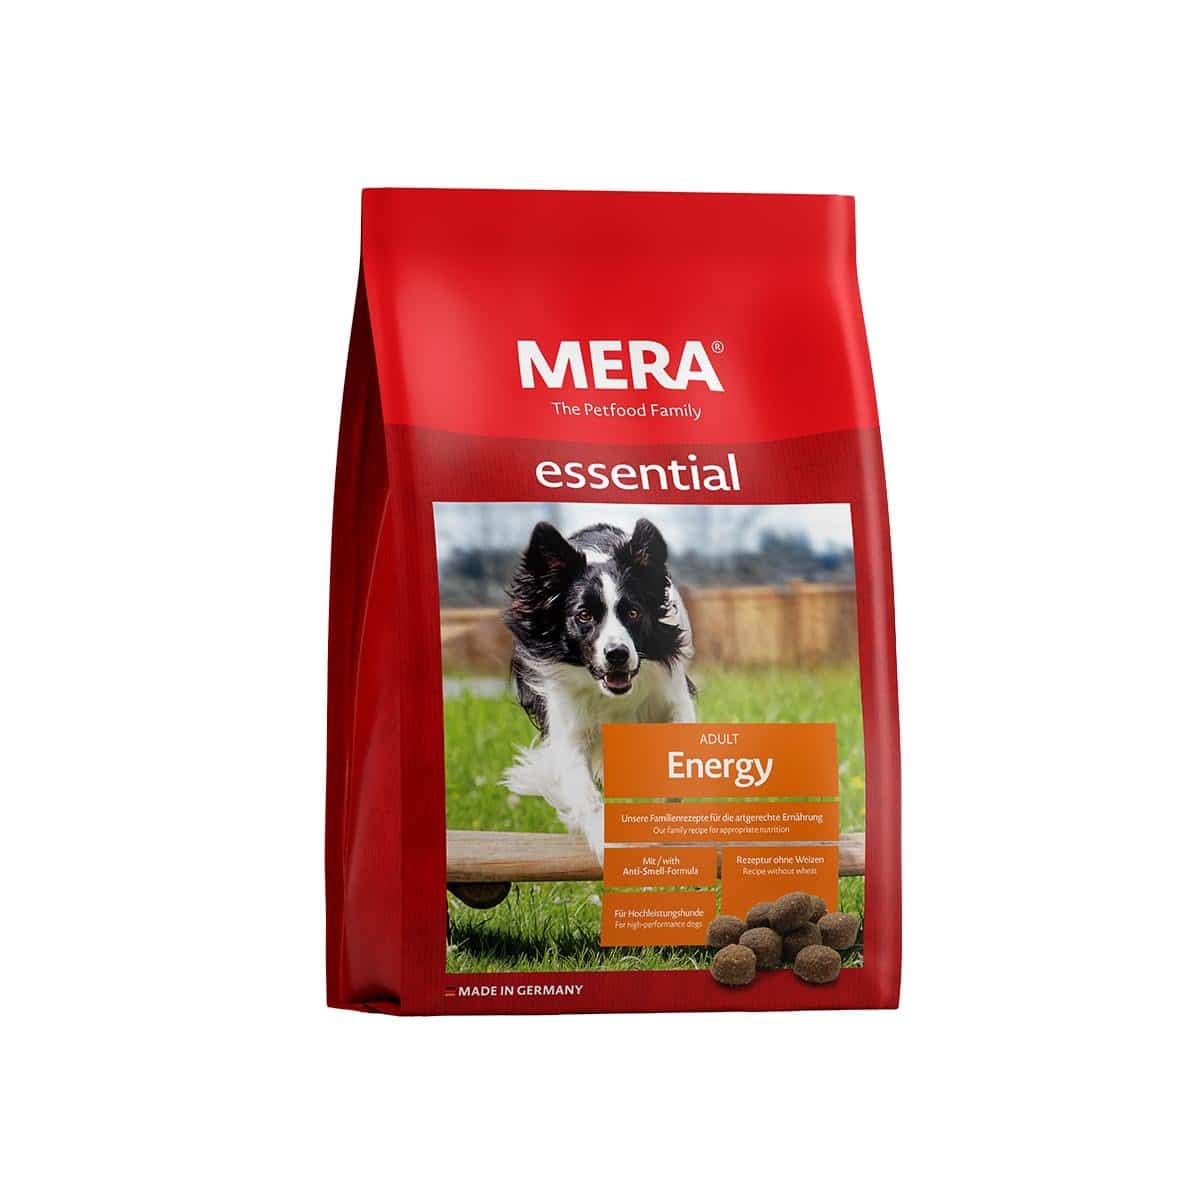 MERA essential Trockenfutter Energy 12